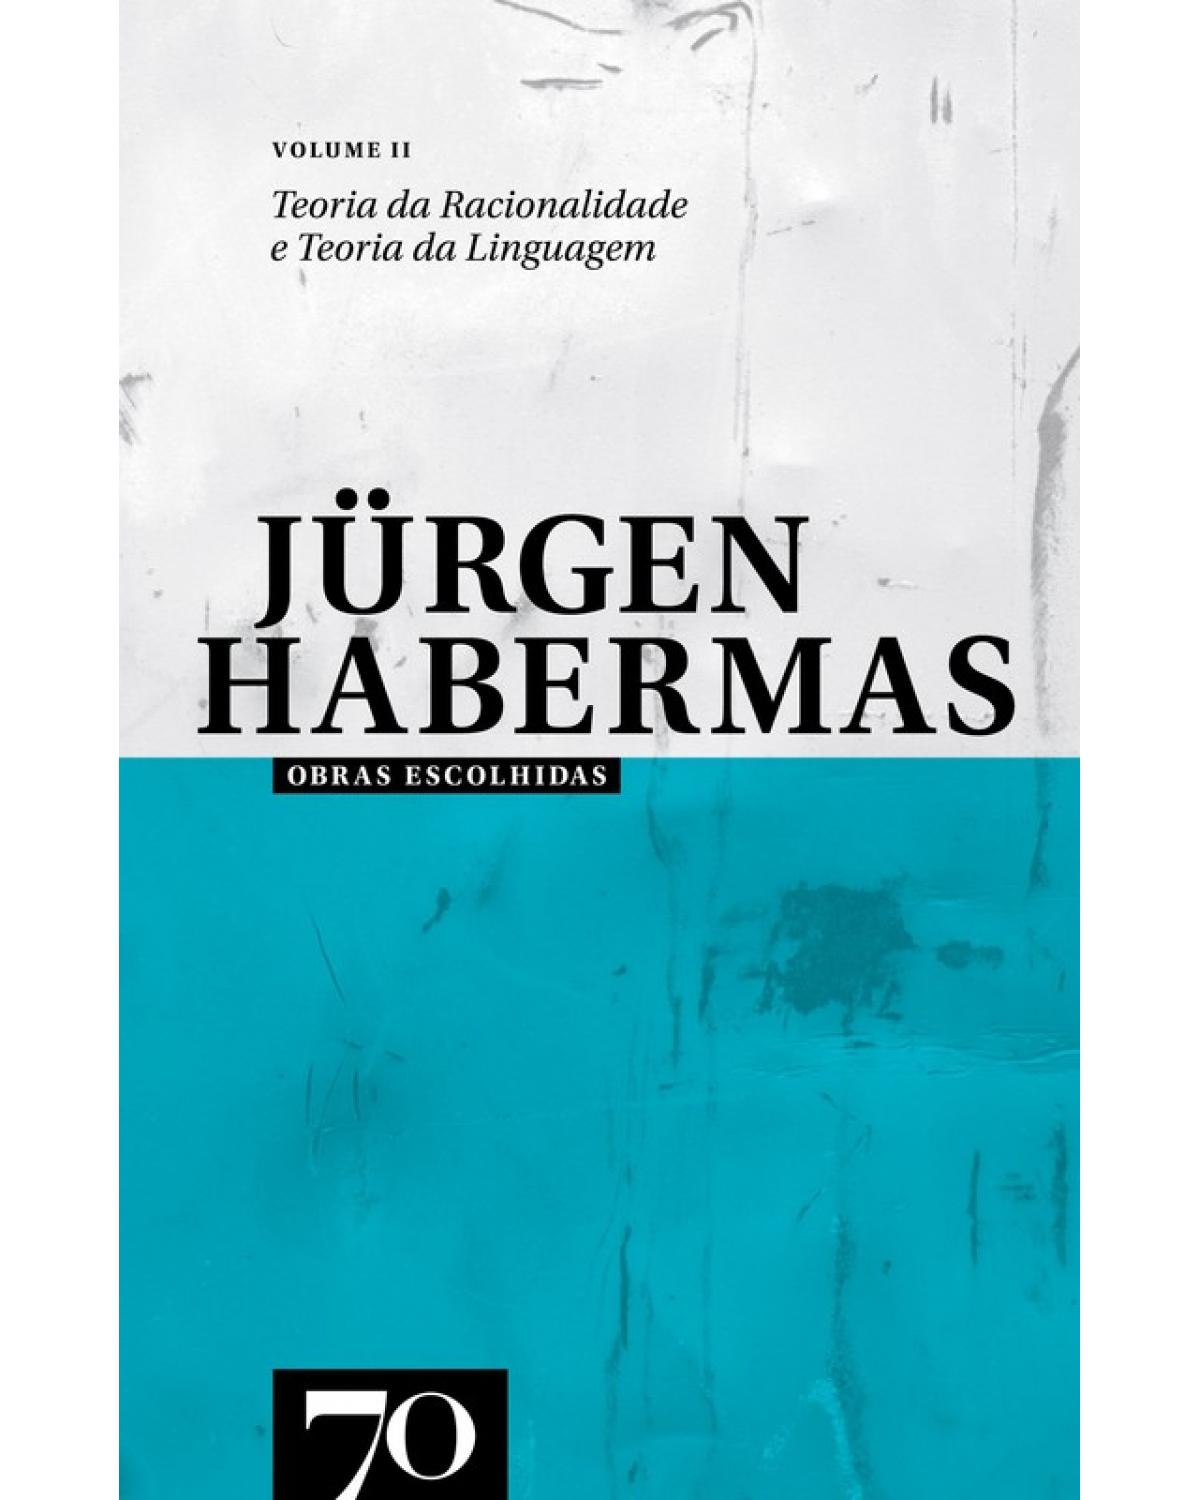 Obras escolhidas de Jürgen Habermas - Volume 2: teoria da racionalidade e teoria da linguagem - 1ª Edição | 2010